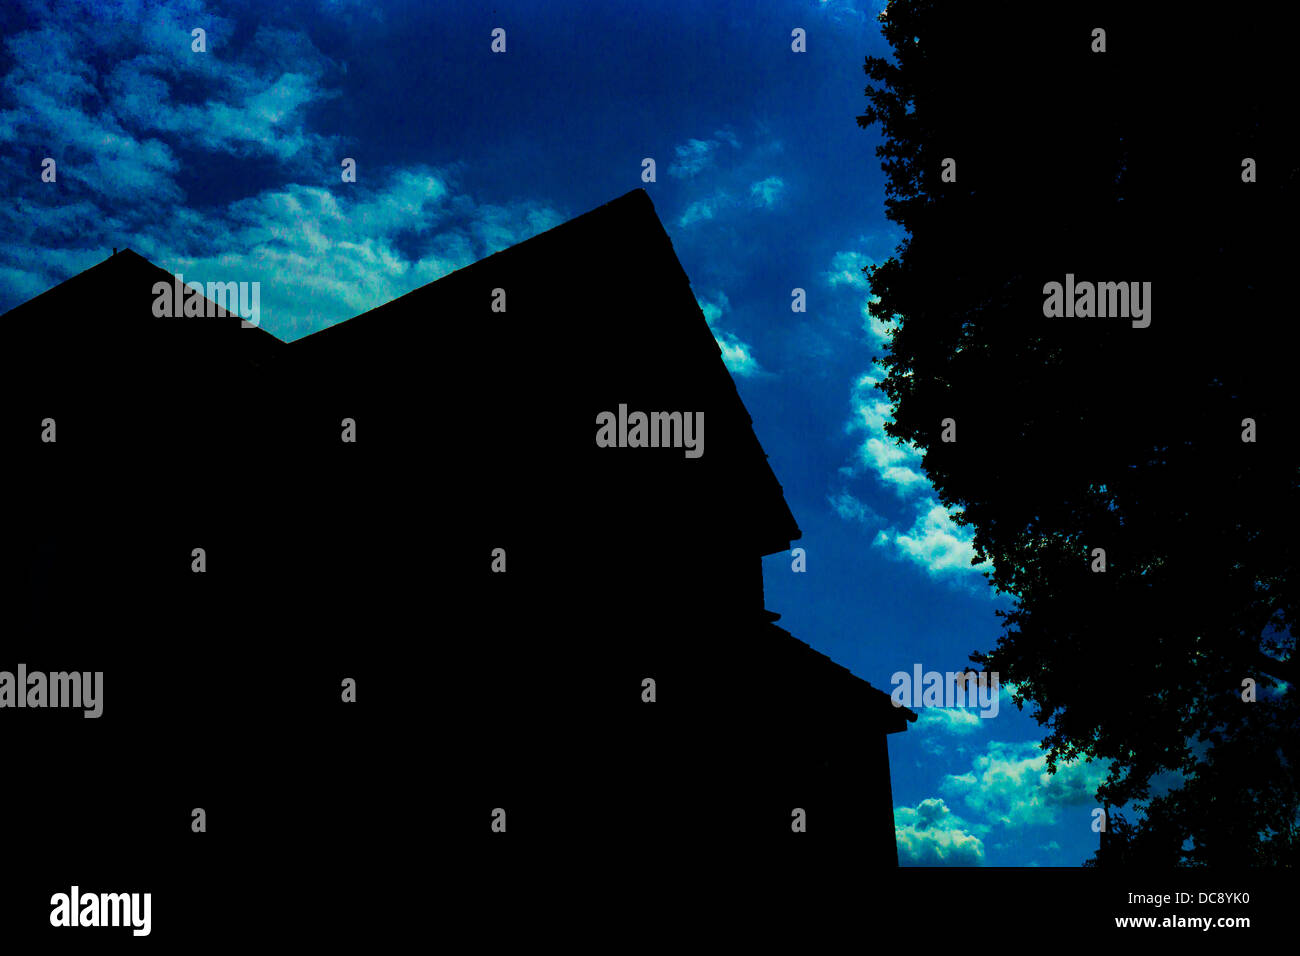 Casa ritaglio ad albero nuvole oscurati edificio casa sky tree intaglio nuvole oscurati edificio chiaro cielo soleggiato con nuvole Foto Stock